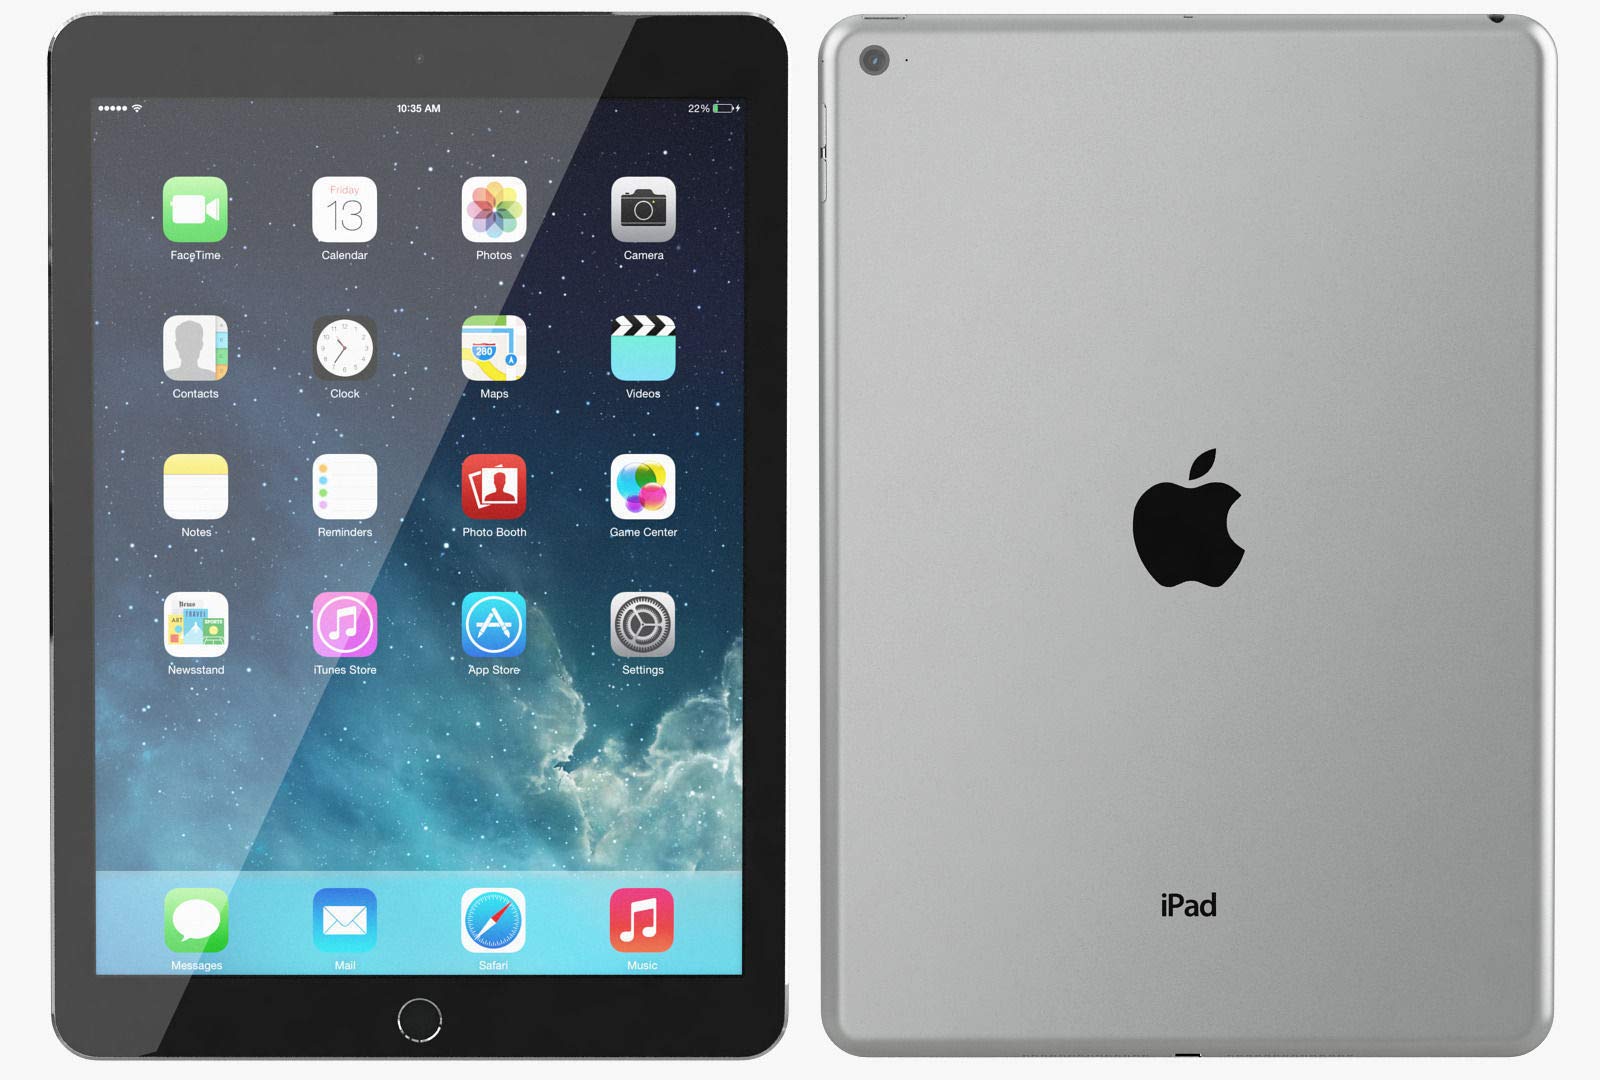 2014 Apple iPad Air 2 (9.7-inch, Wi-Fi, 16GB) - Space Gray (Renewed)